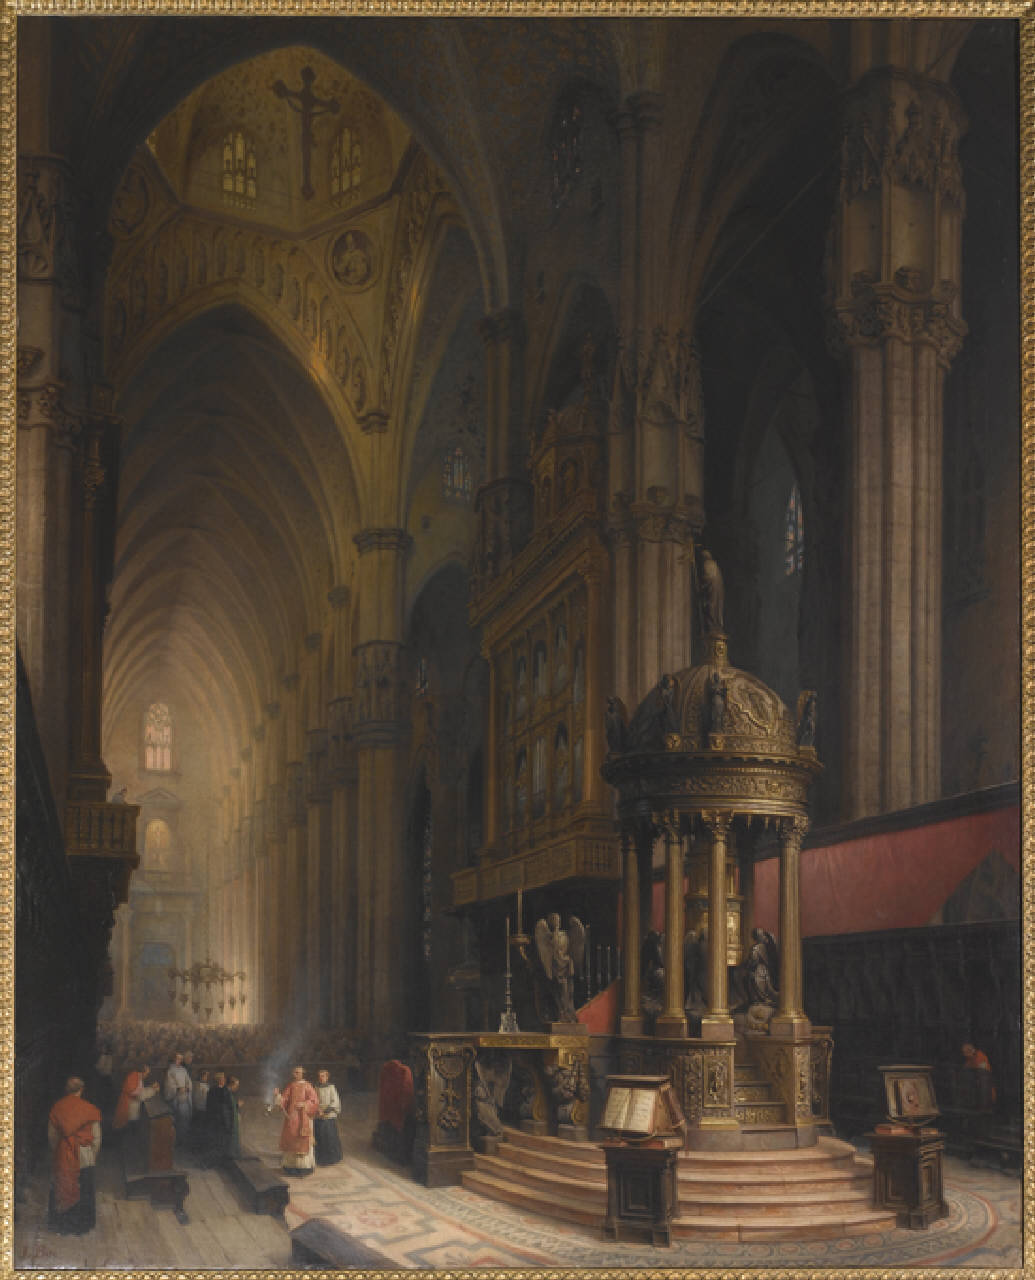 La Sagrestia del Duomo di Milano, Interno del Duomo di Milano (dipinto) di Bisi Luigi - vedutismo romantico (sec. XIX)